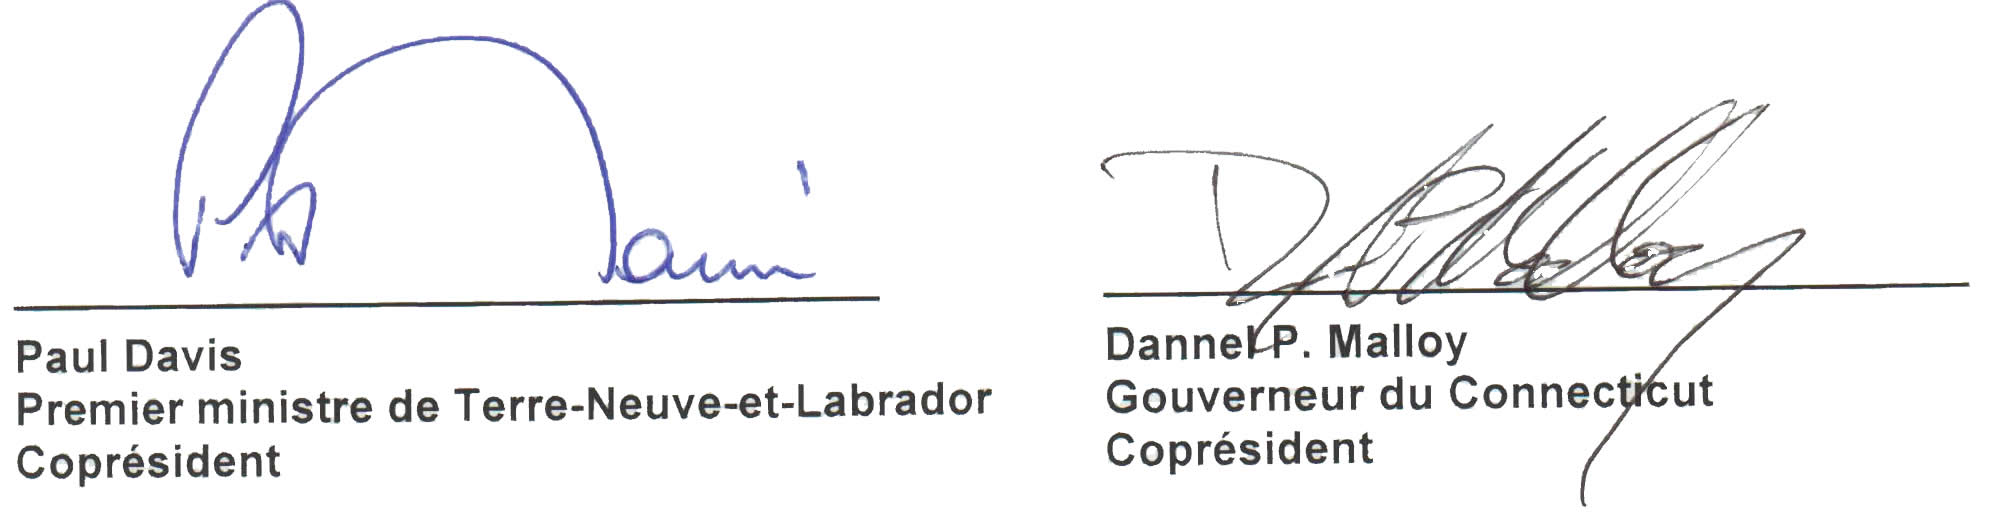 Signature de Paul Davis, Premier ministre de Terre-Neuve-et-Labrador, Coprésident et Dannel P. Malloy, Gouverneur du Connecticut, Coprésident